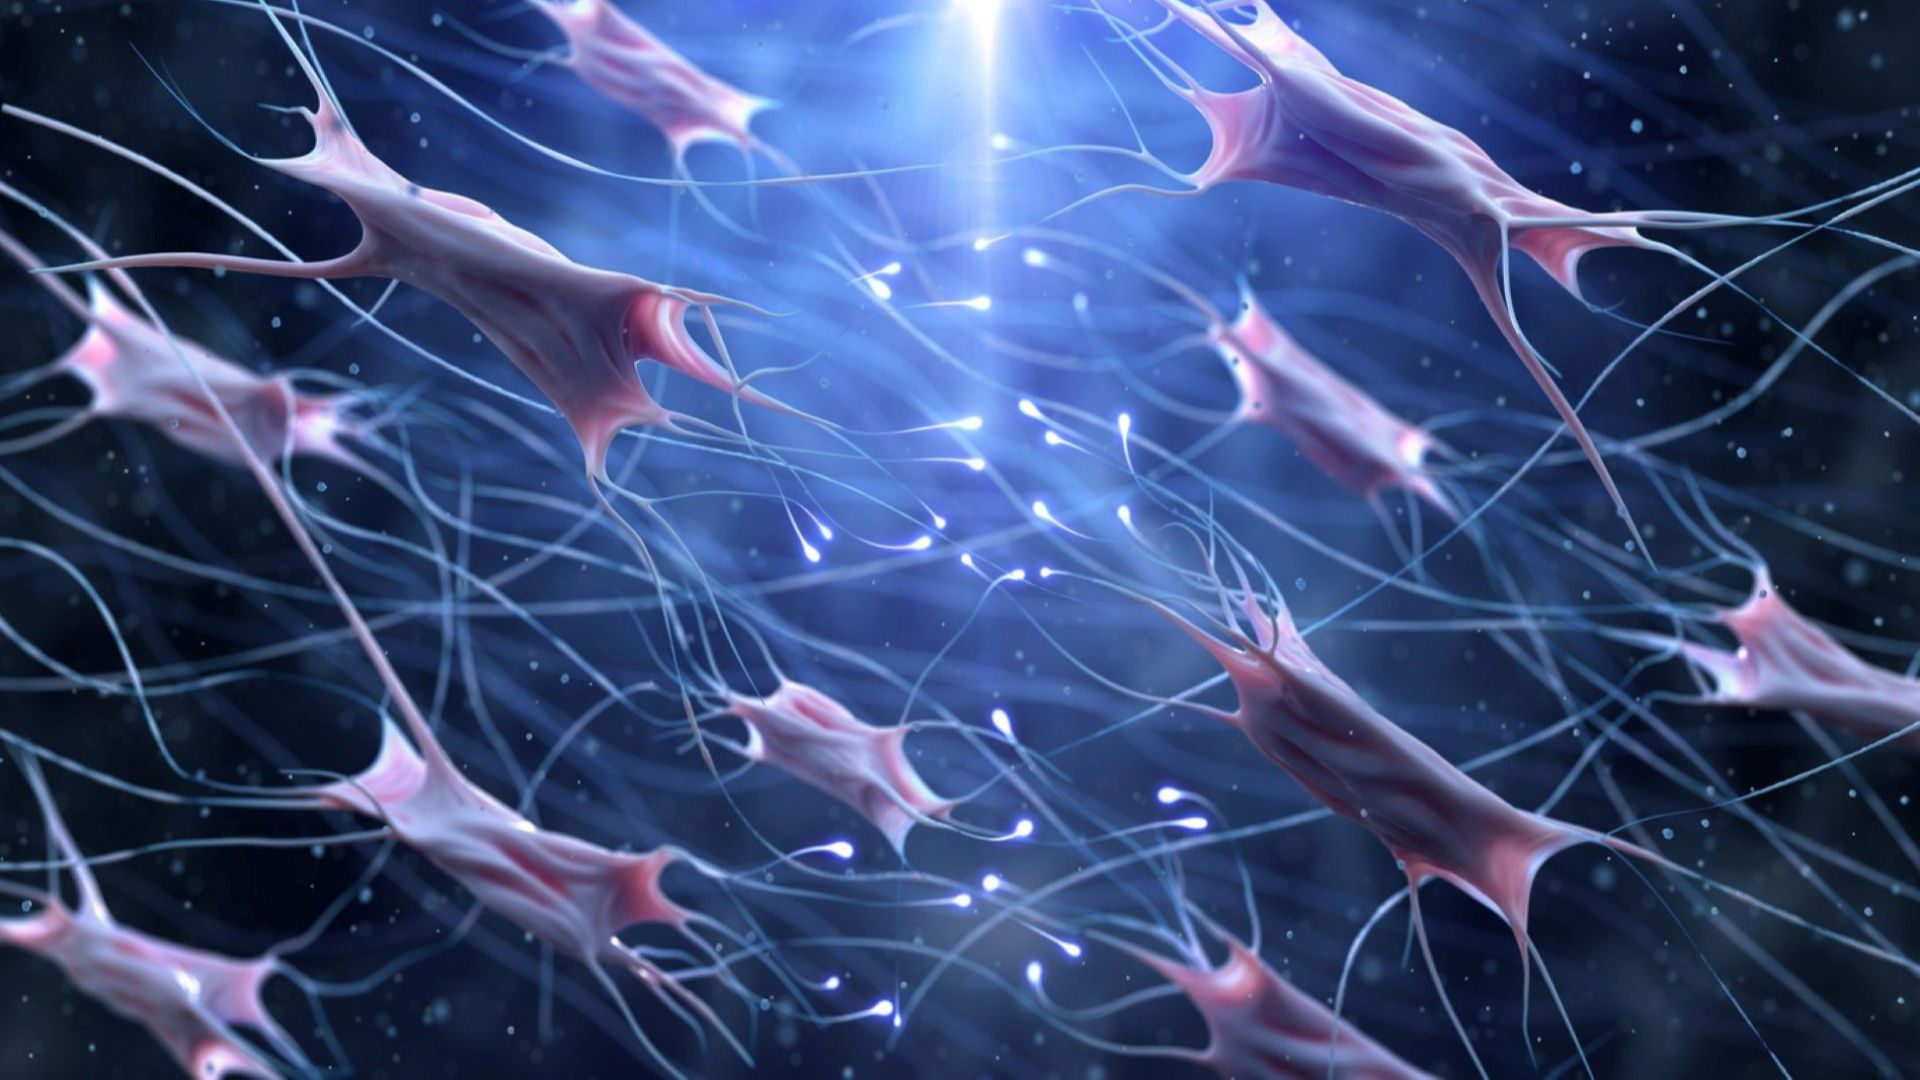 Учени създадоха изкуствени нервни клетки